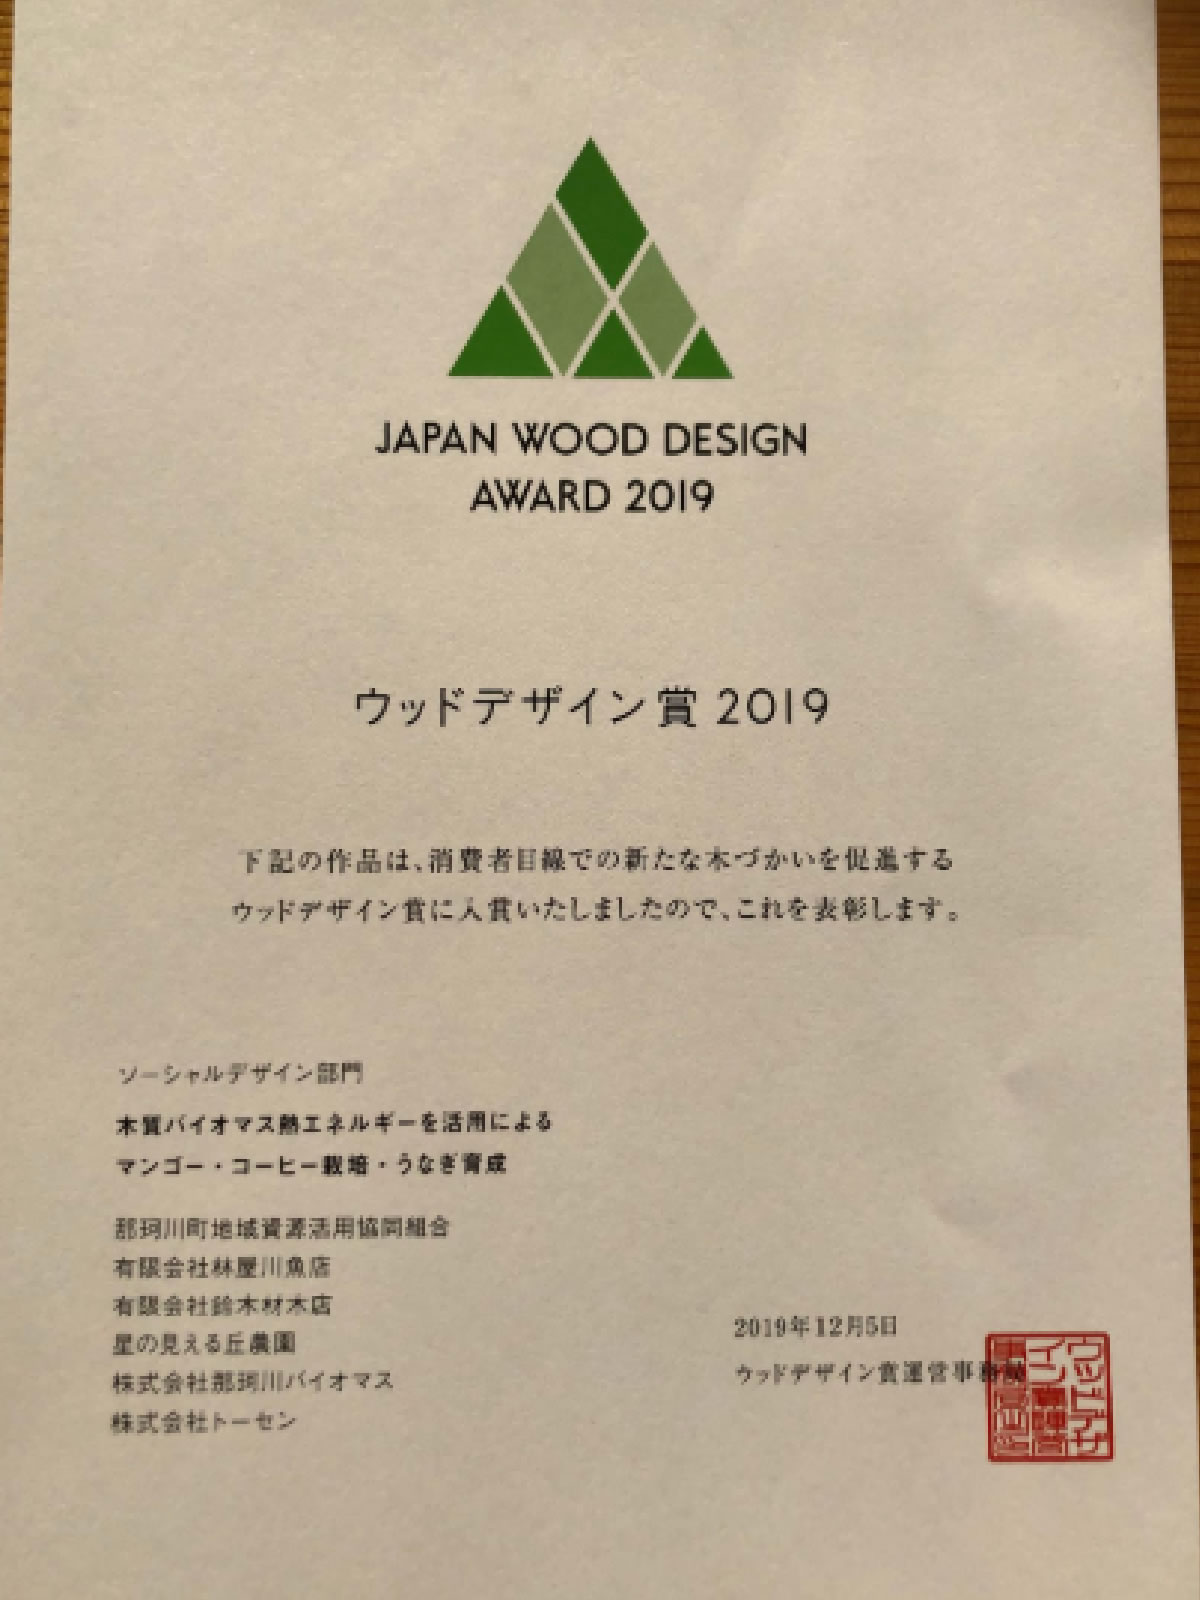 ウッドデザイン賞2019のソーシャルデザイン部門に入賞しました！